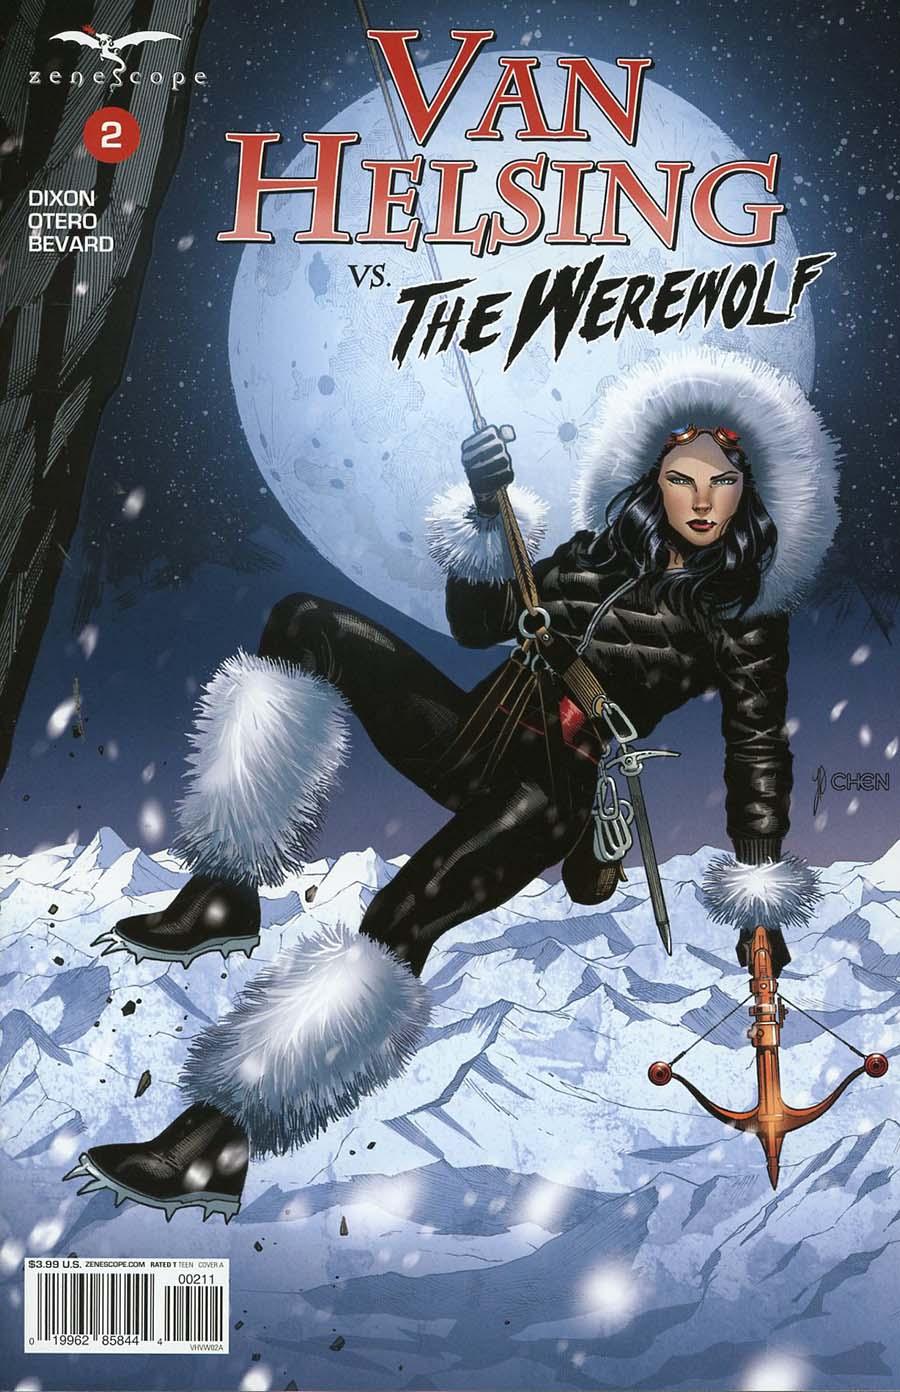 Grimm Fairy Tales Presents Van Helsing vs The Werewolf Vol. 1 #2